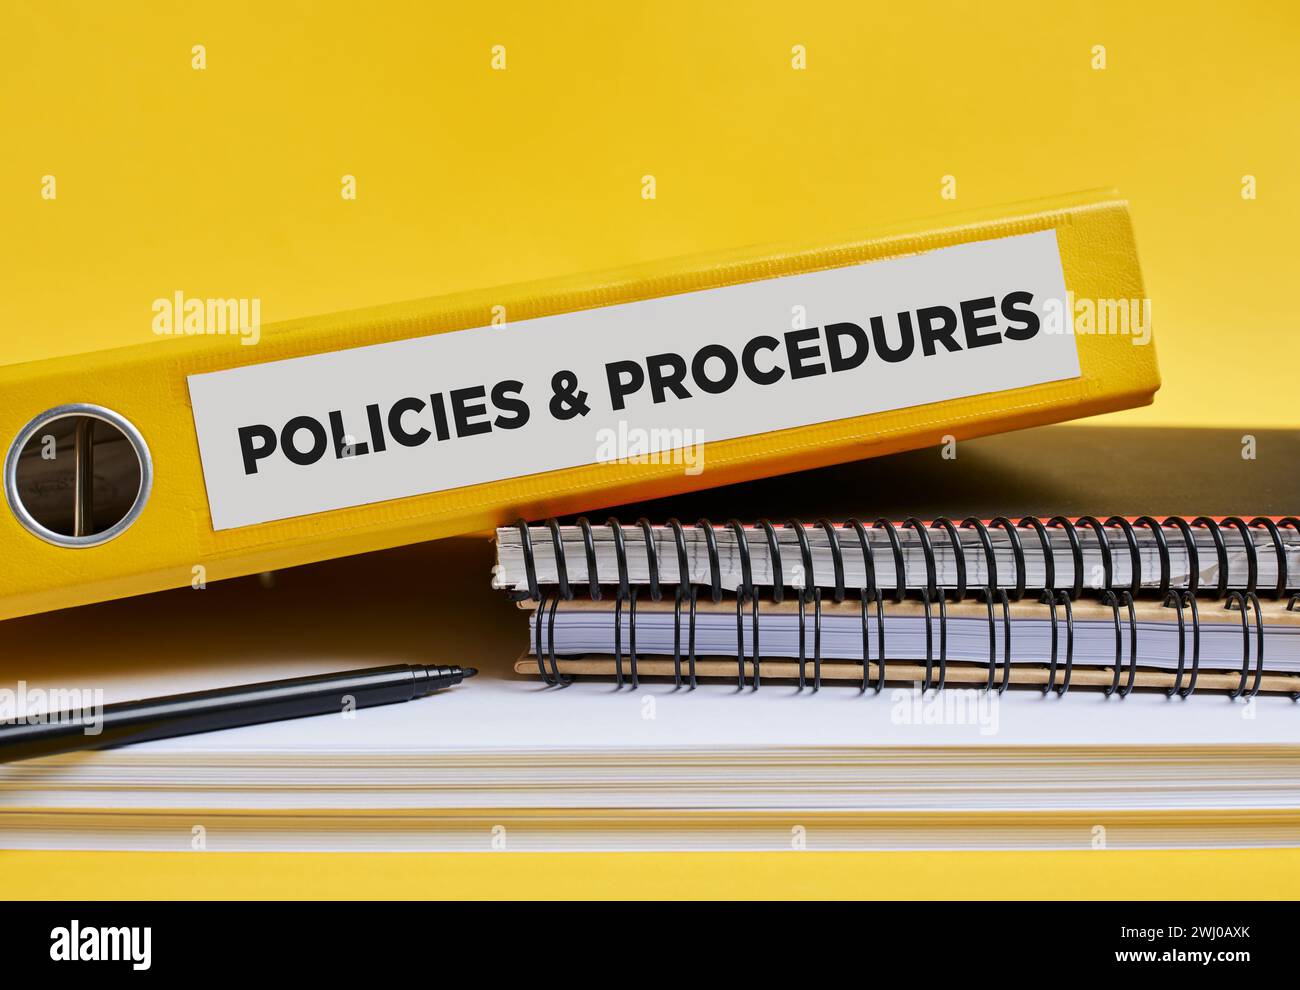 Politiques et procédures écrites sur l'étiquette d'une reliure jaune sur le bureau. Concept des politiques et procédures de l'entreprise ou de l'entreprise. Banque D'Images